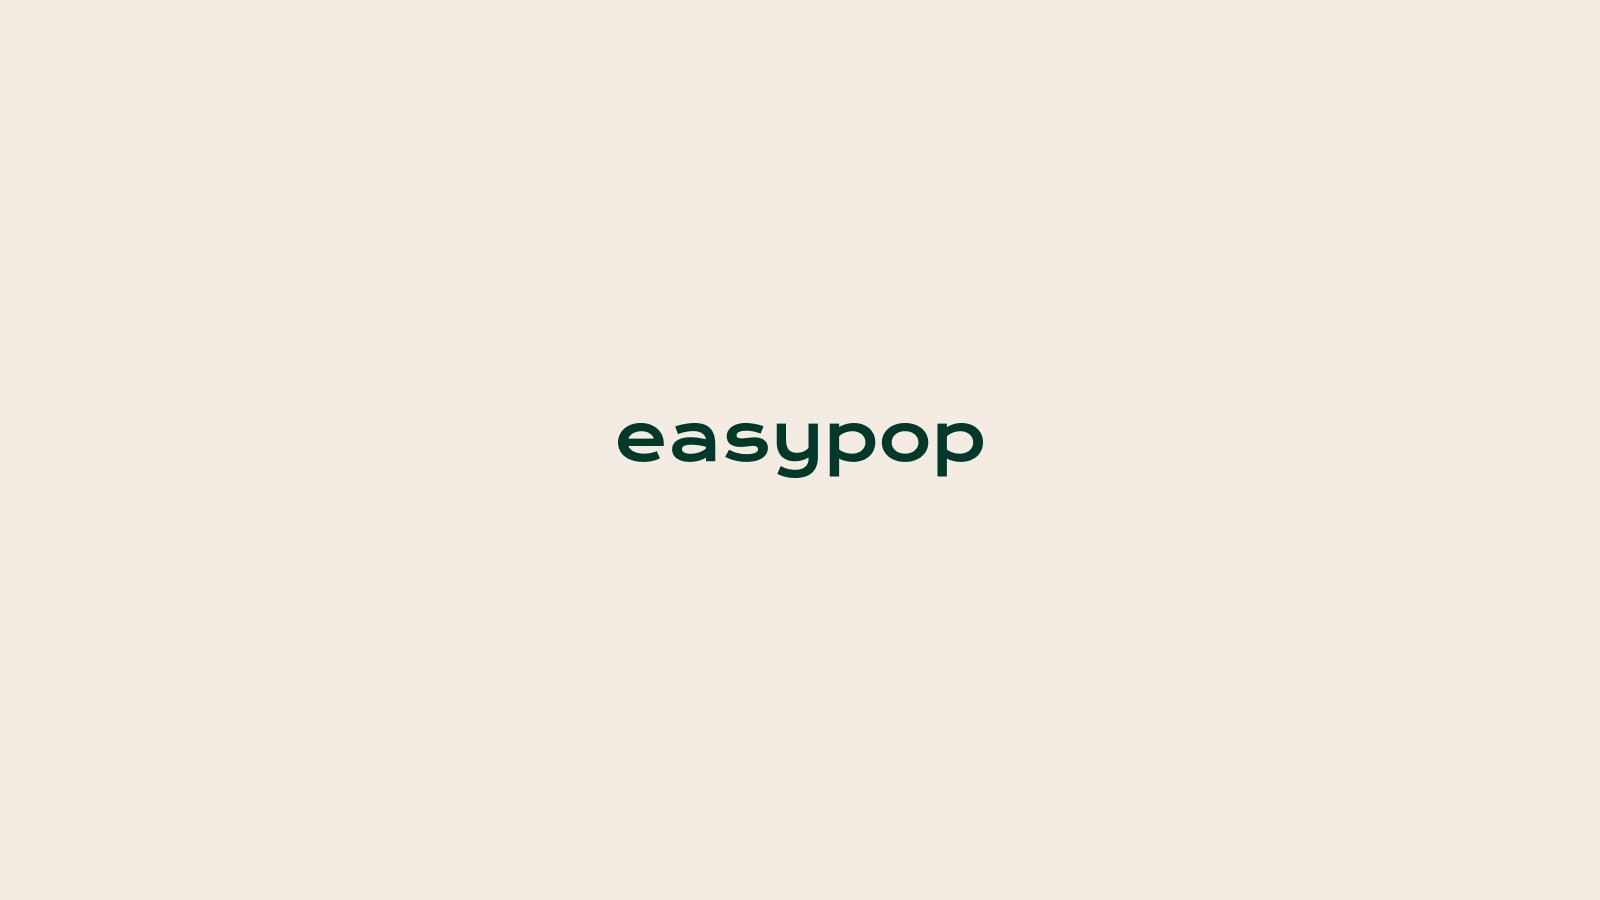 Easypop